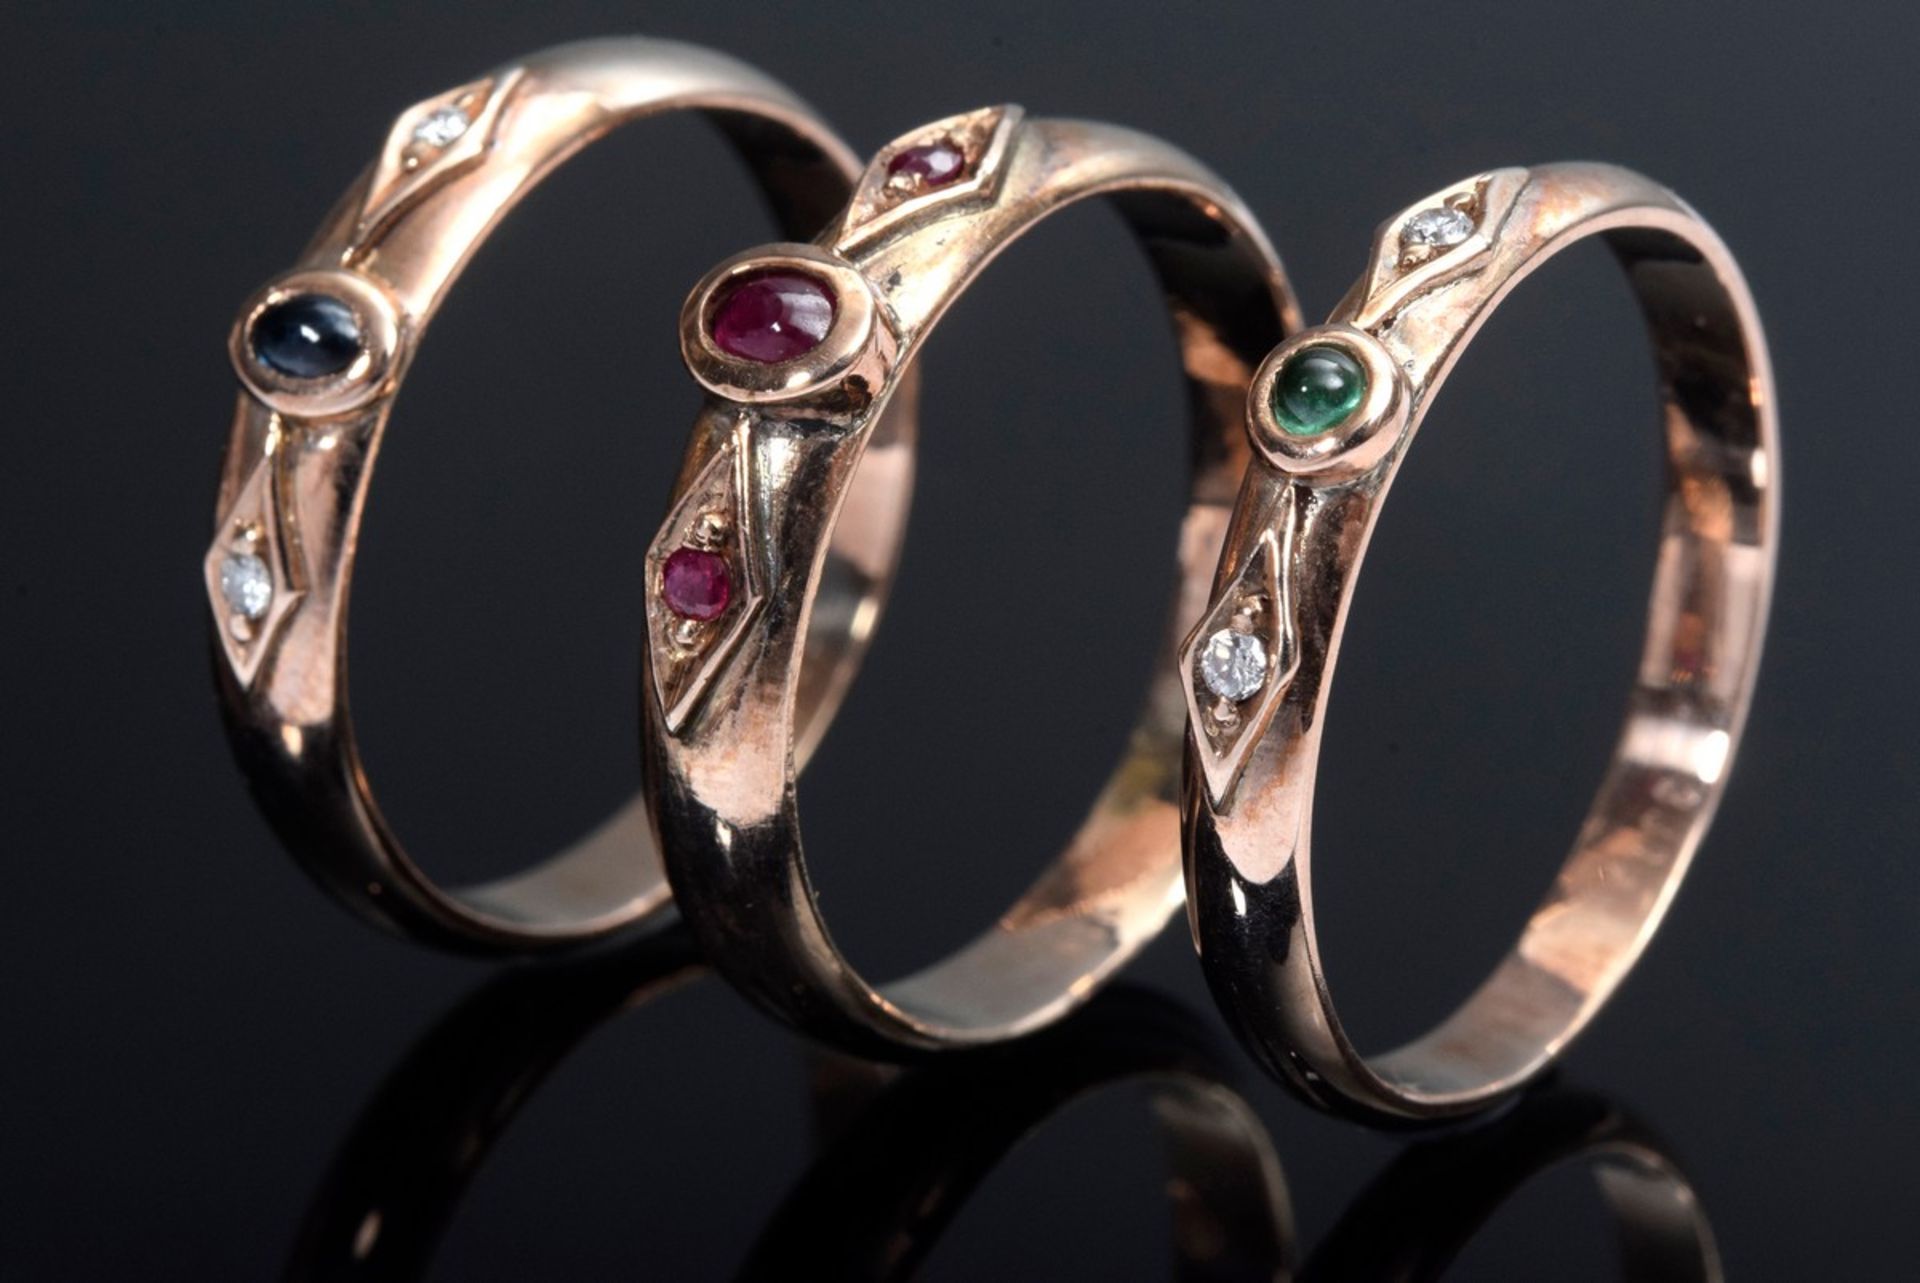 3 Diverse RG 333 Ringe mit Turmalinen, Rubinen, Smaragd und Brillantbesatz, 6,